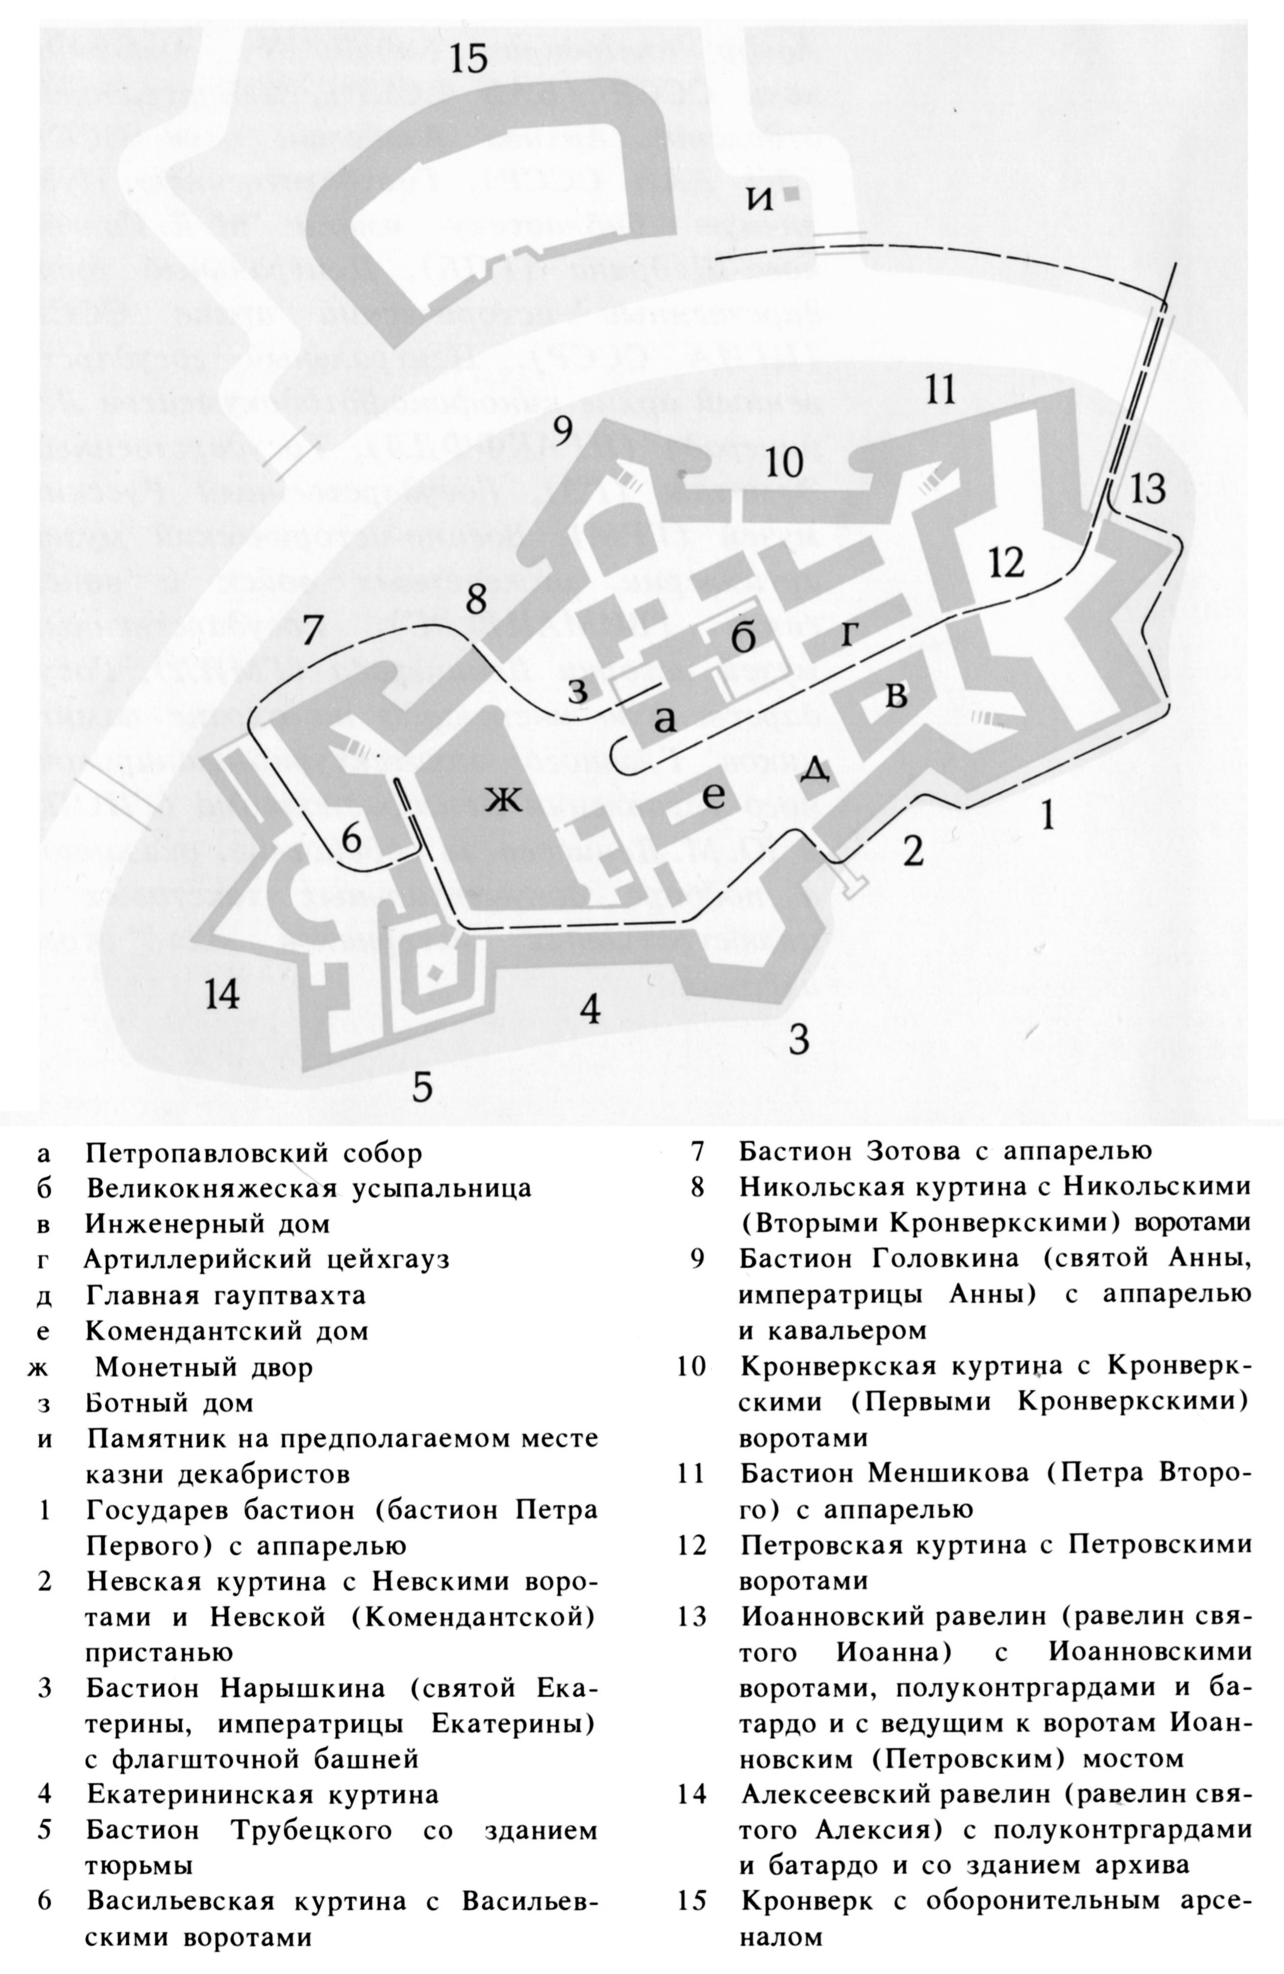 Петро-Павловская (Санкт-Петербургская) крепость